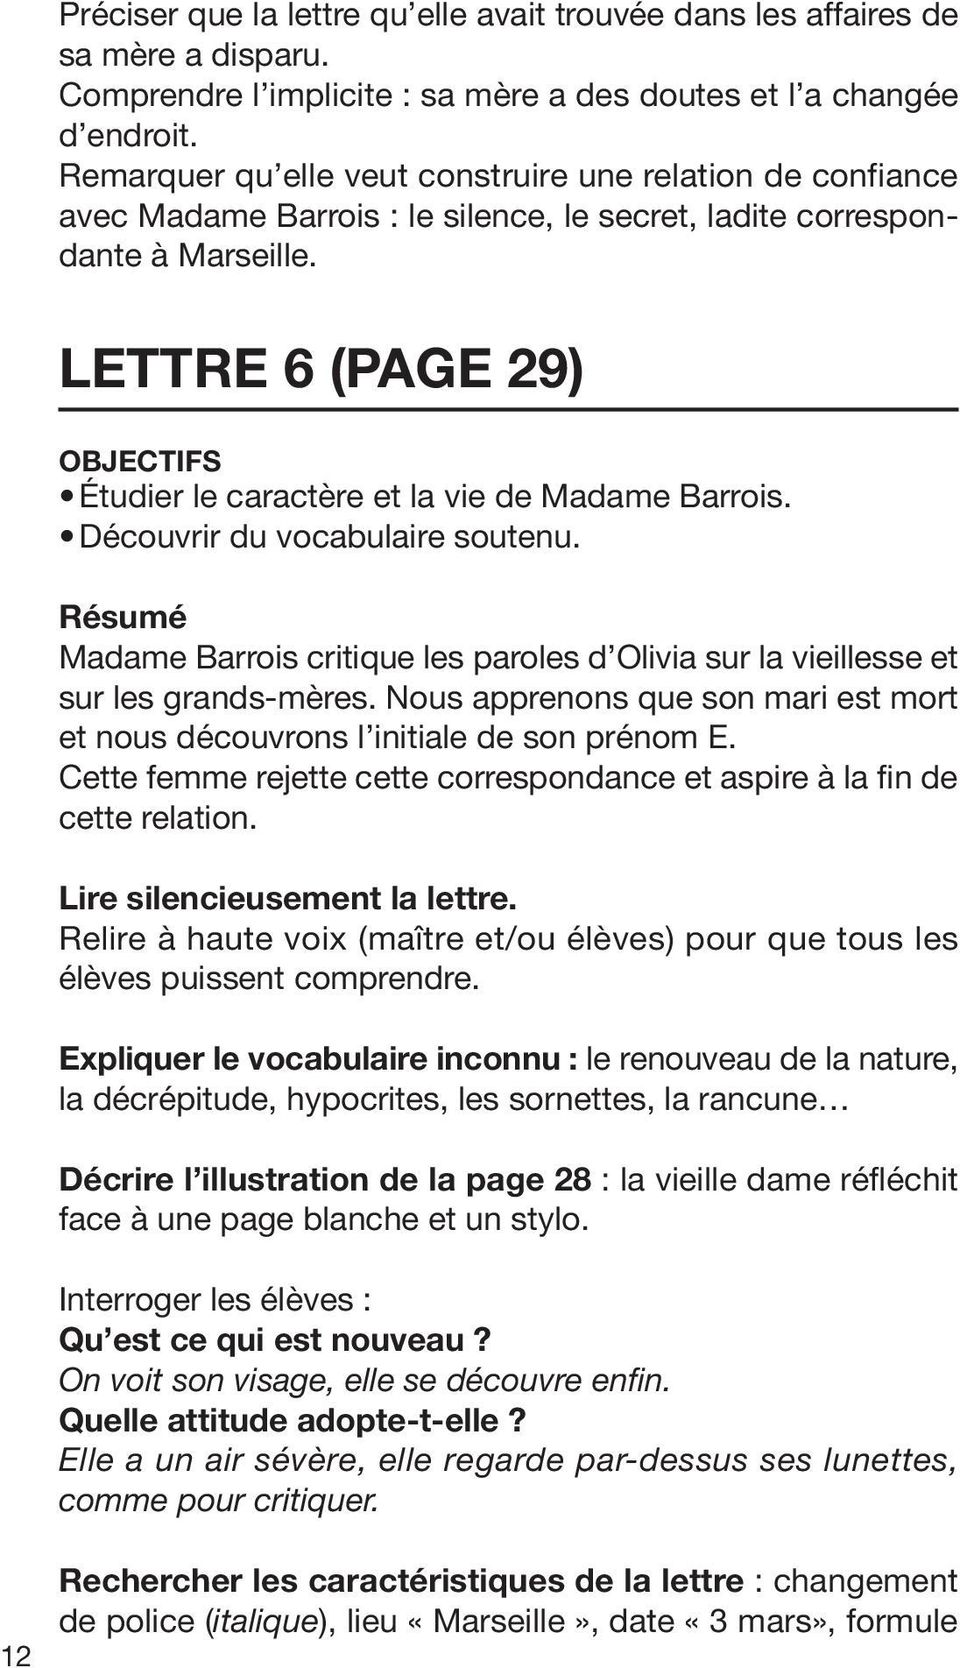 12 Lettre 6 (page 29) OBJECTIFS Étudier le caractère et la vie de Madame Barrois. Découvrir du vocabulaire soutenu.